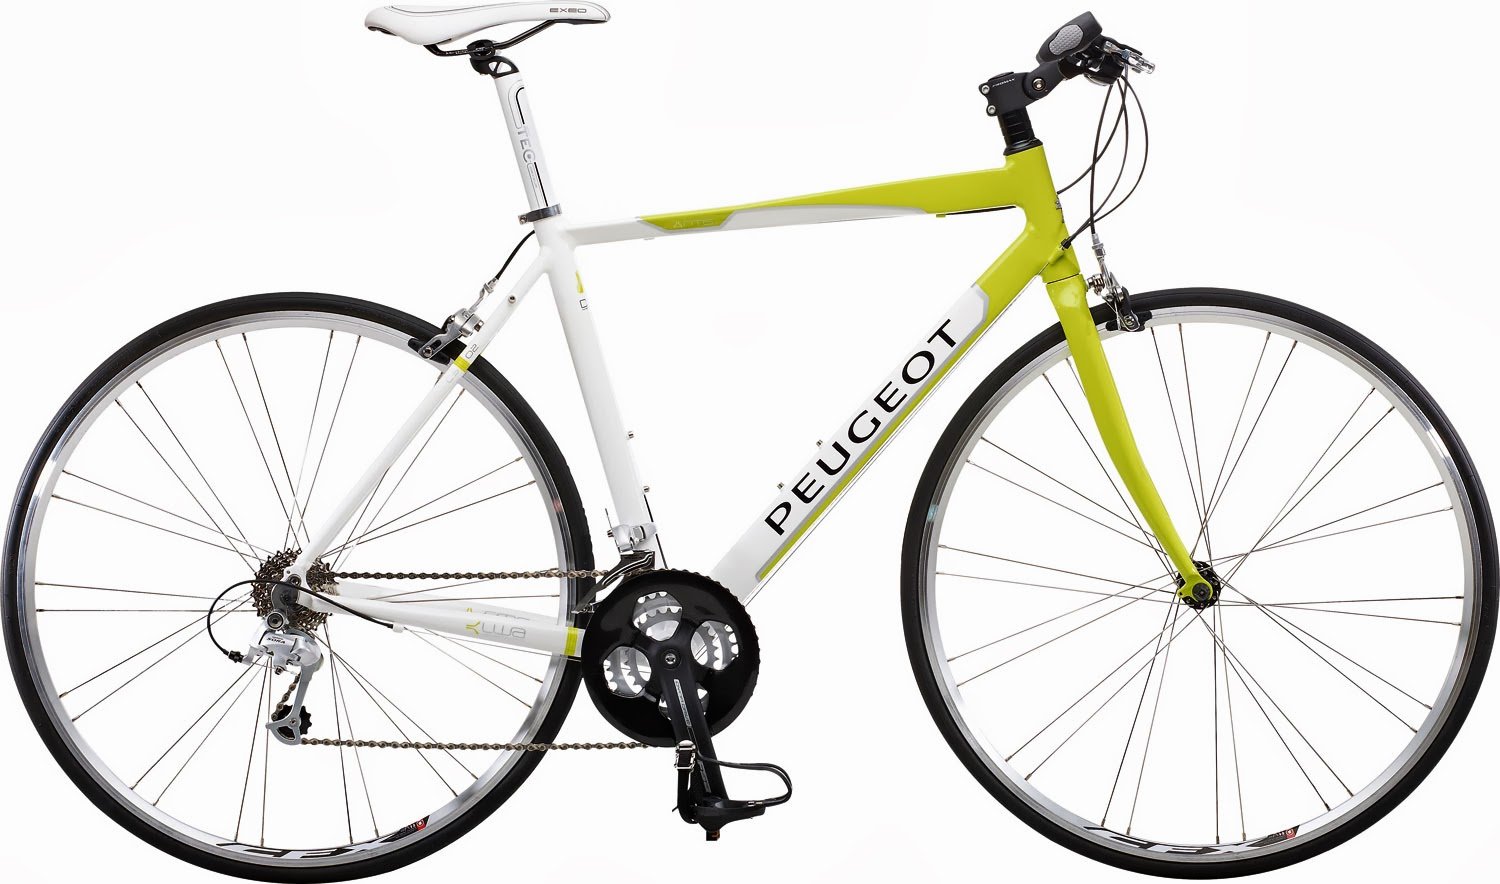 Xe đạp Peugeot huyền thoại xe đạp Pháp nhập khẩu châu âu  16200000đ   Nhật tảo